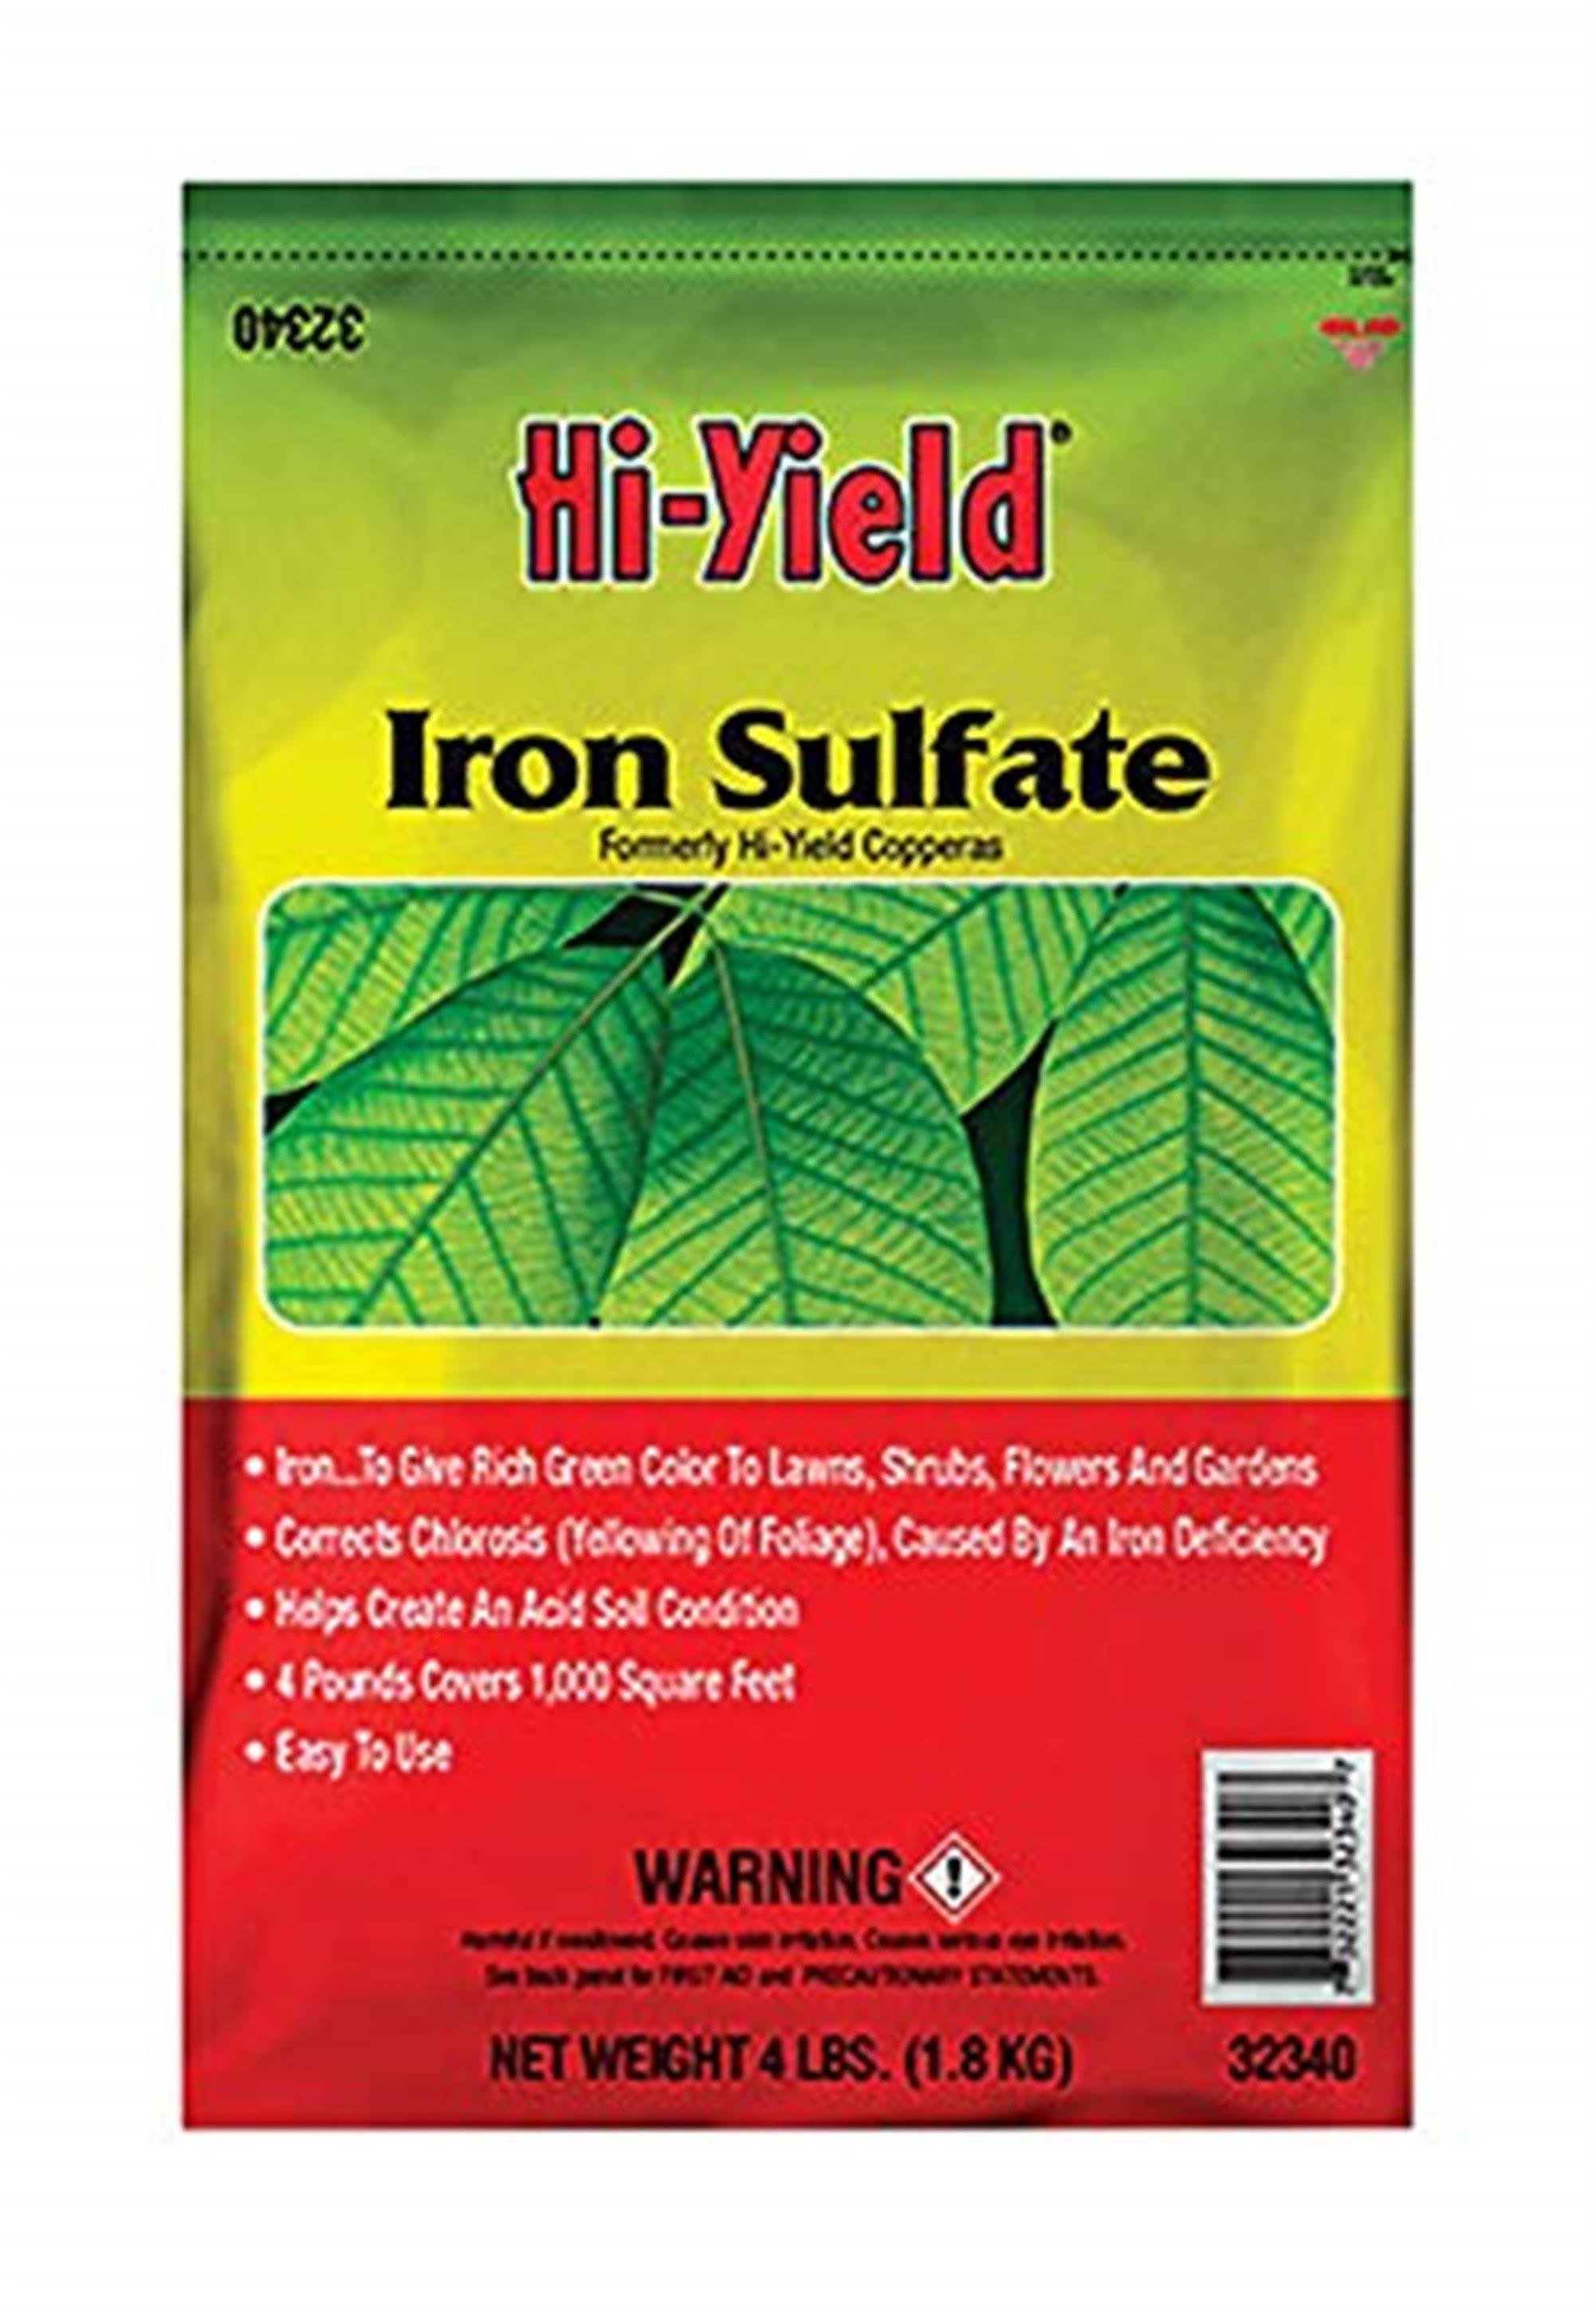 Hi-yield 32340 Iron Sulfate - 4lbs